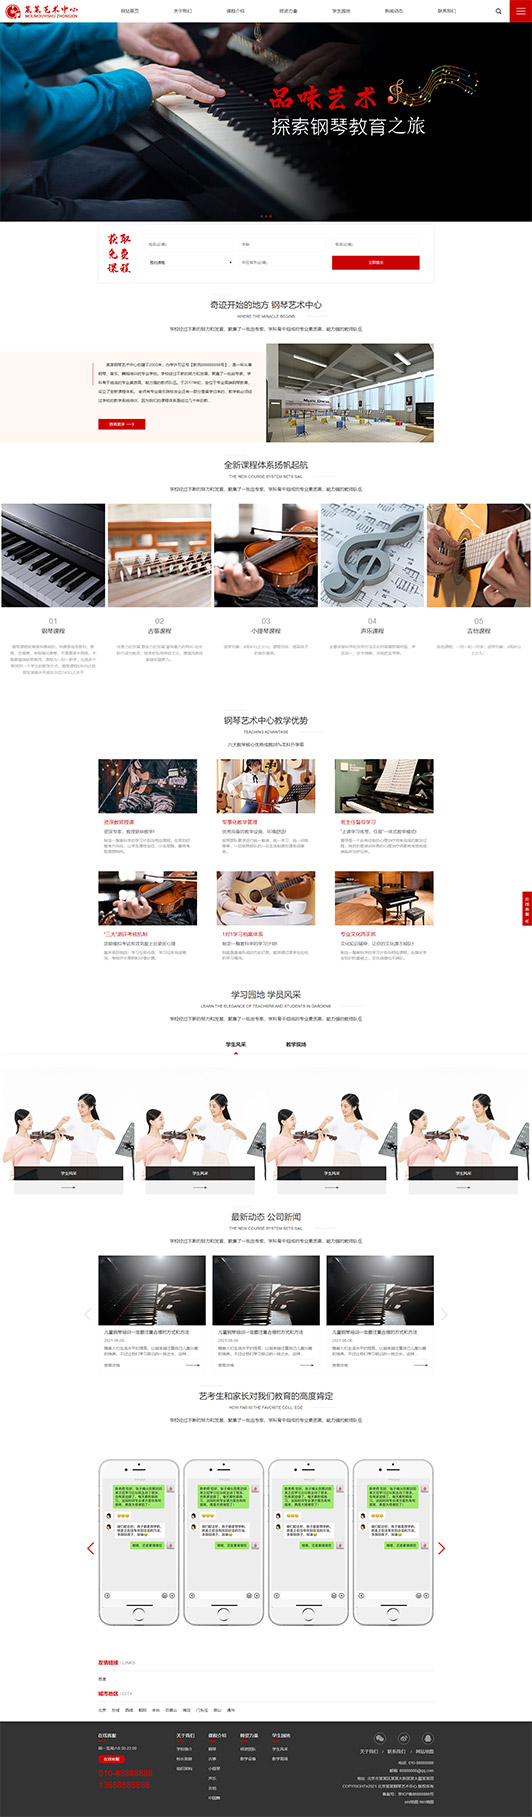 张掖钢琴艺术培训公司响应式企业网站